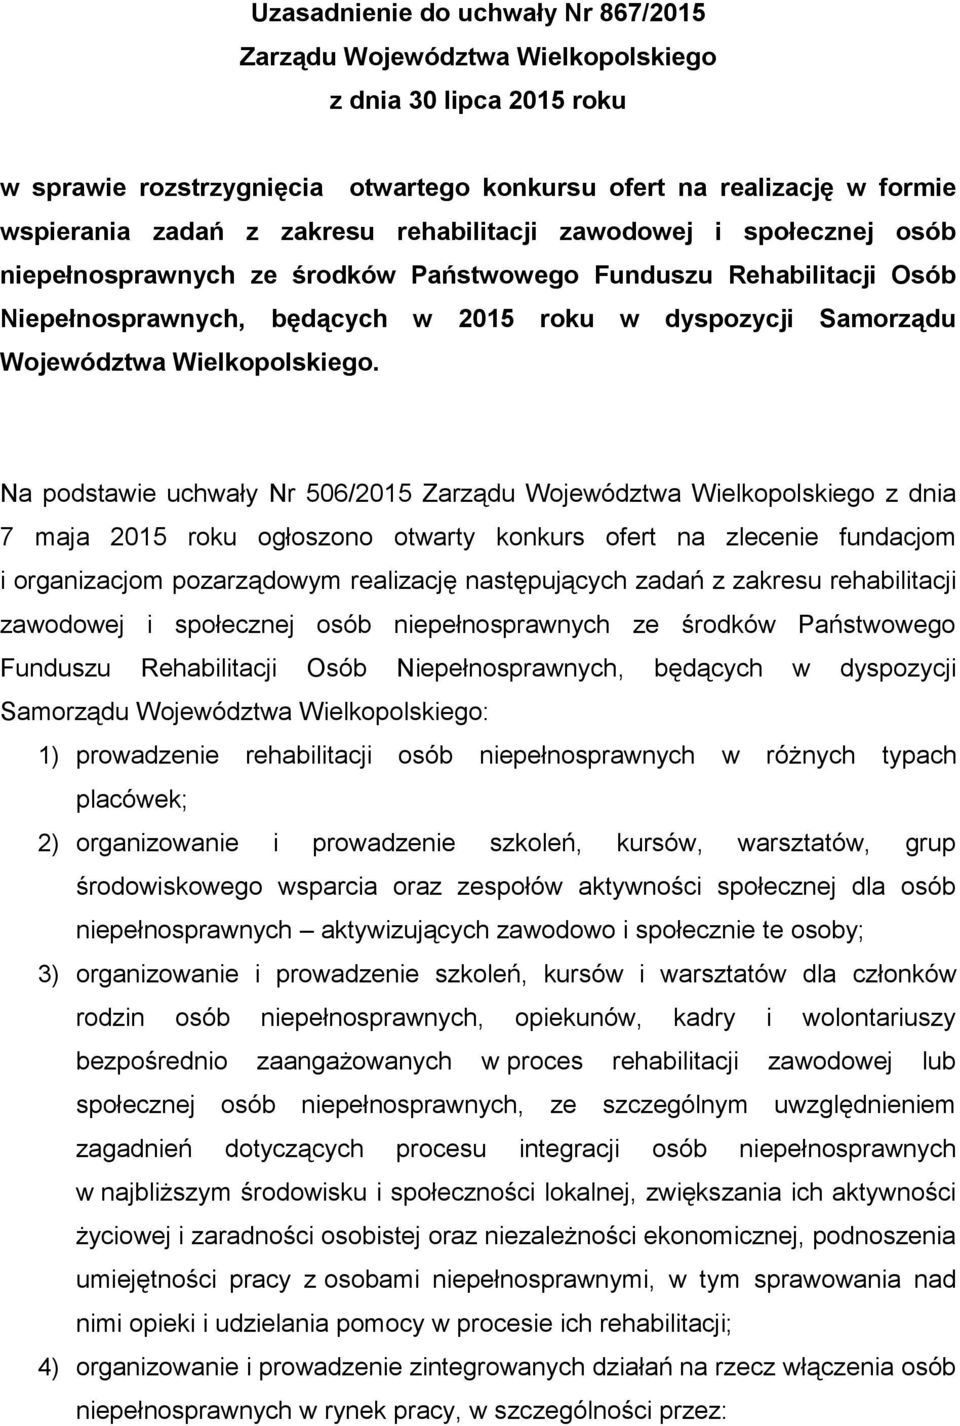 Na podstawie uchwały Nr 506/2015 Zarządu Województwa Wielkopolskiego z dnia 7 maja 2015 roku ogłoszono otwarty konkurs ofert na zlecenie fundacjom i organizacjom pozarządowym realizację następujących